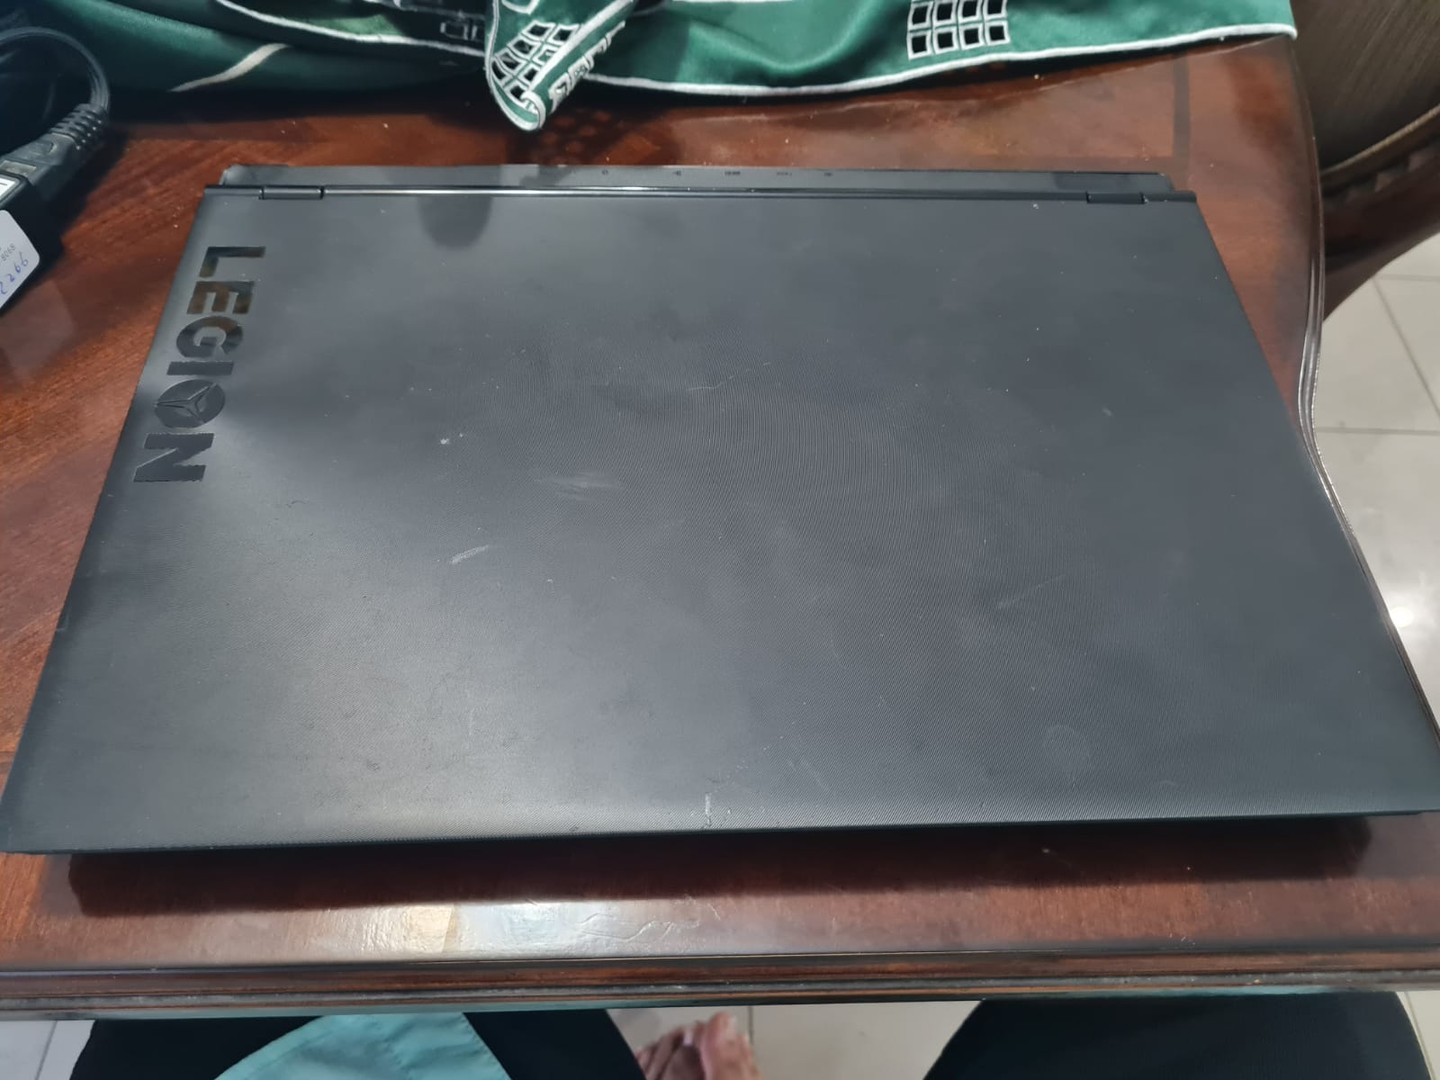 computadoras y laptops - Laptop Lenovo Y530 Gamer Gaming Ver Descripcion